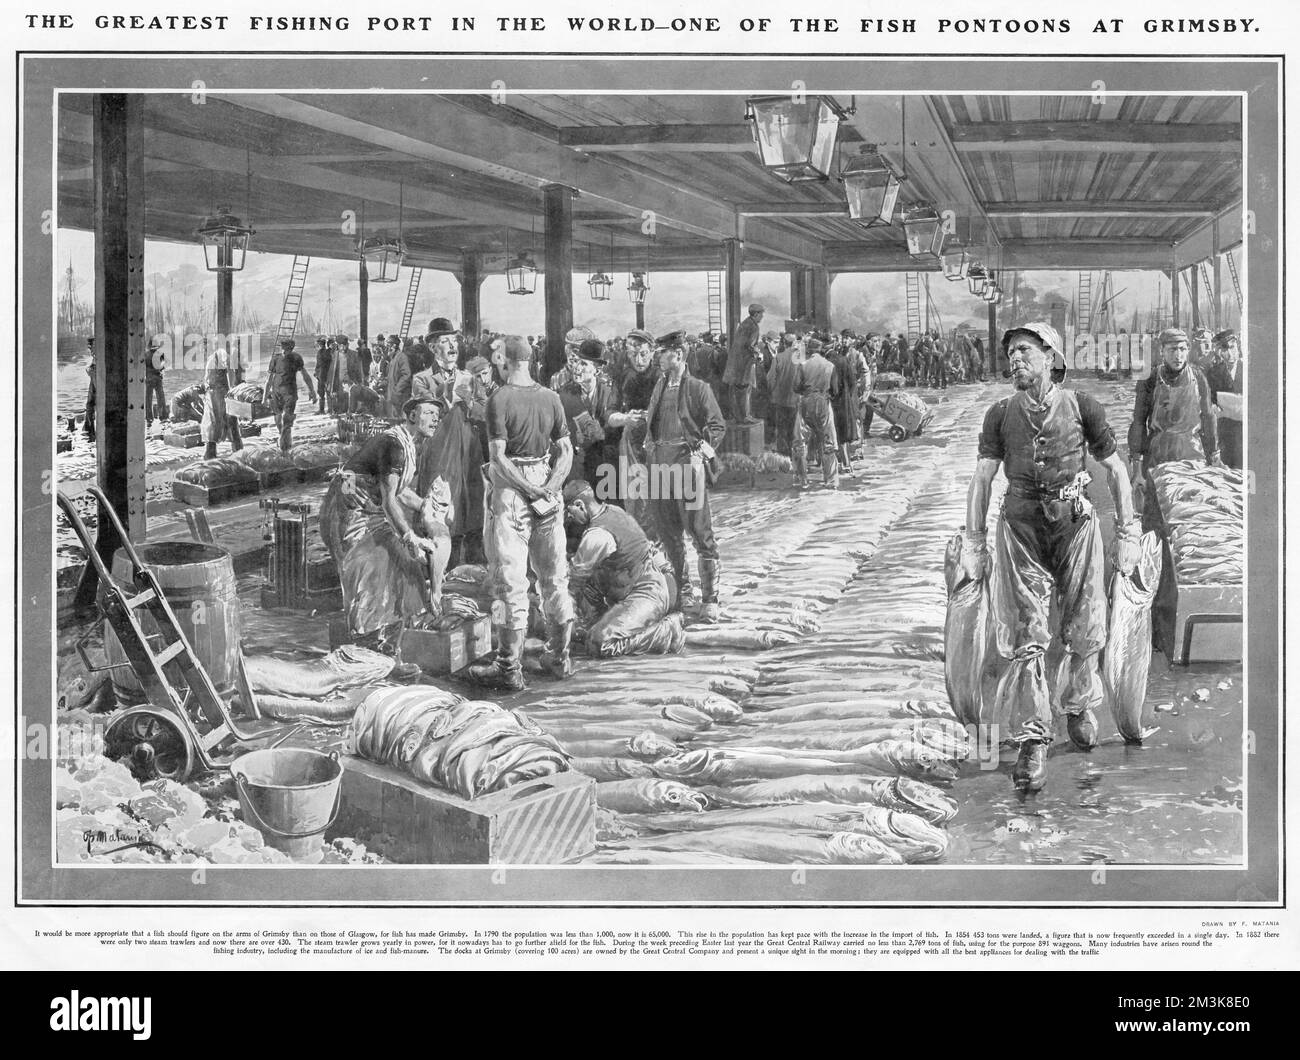 Un'illustrazione di ciò che è stato descritto nella sfera come "uno dei più grandi porti di pesca del mondo". Nel 1790 la popolazione era inferiore a 1.000 abitanti e nel 1907 era di 65.000 abitanti. In 1854 453 tonnellate di pesce sono state sbarcate, e al momento della foto, questo numero è stato spesso superato in un solo giorno. Il porto di Grimsby copre 100 ettari. Foto Stock